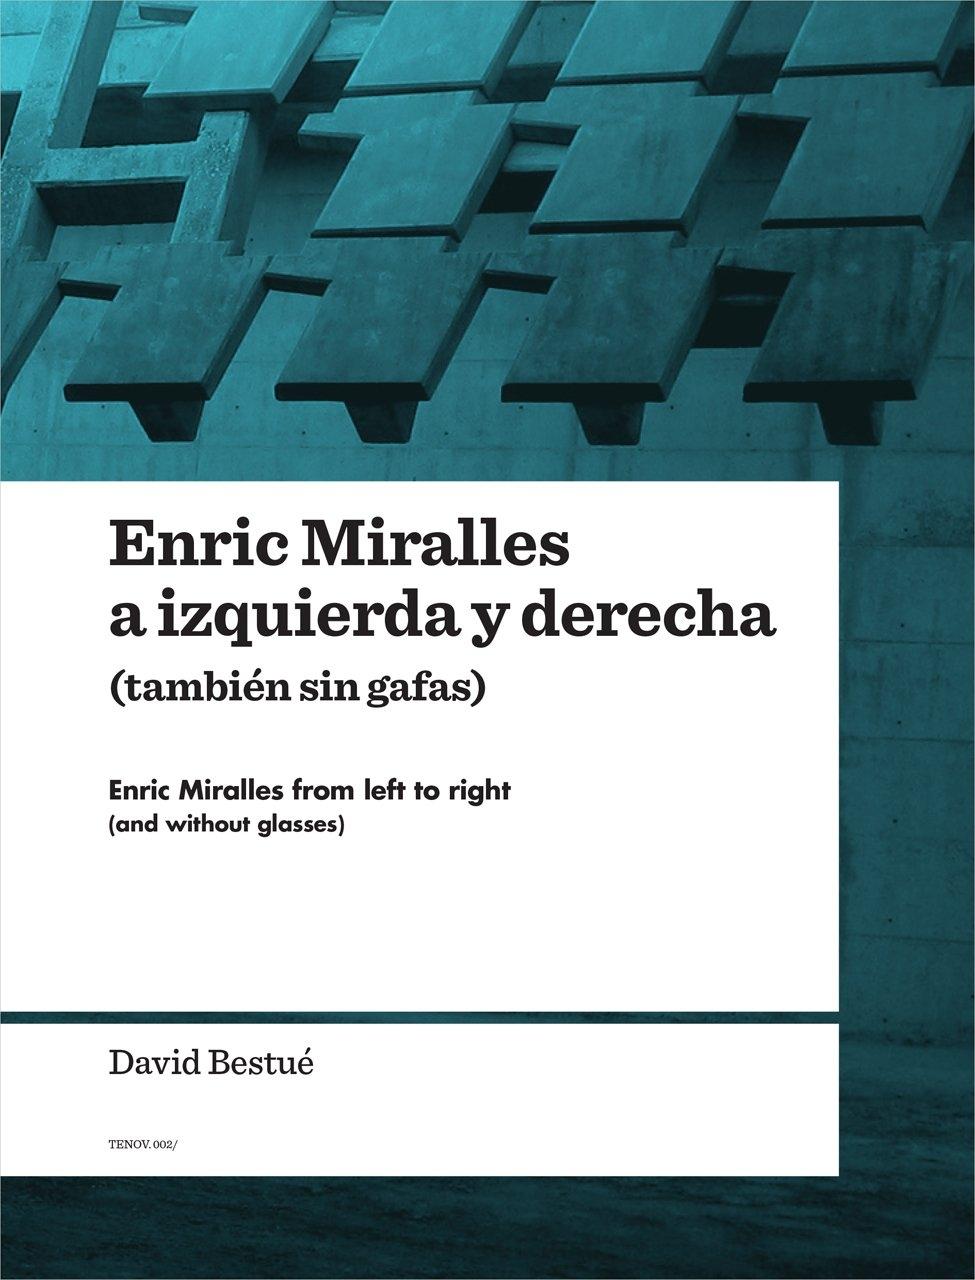 ENRIC MIRALLES A IZQUIERDA Y DERECHA (TAMBIEN SIN GAFAS)